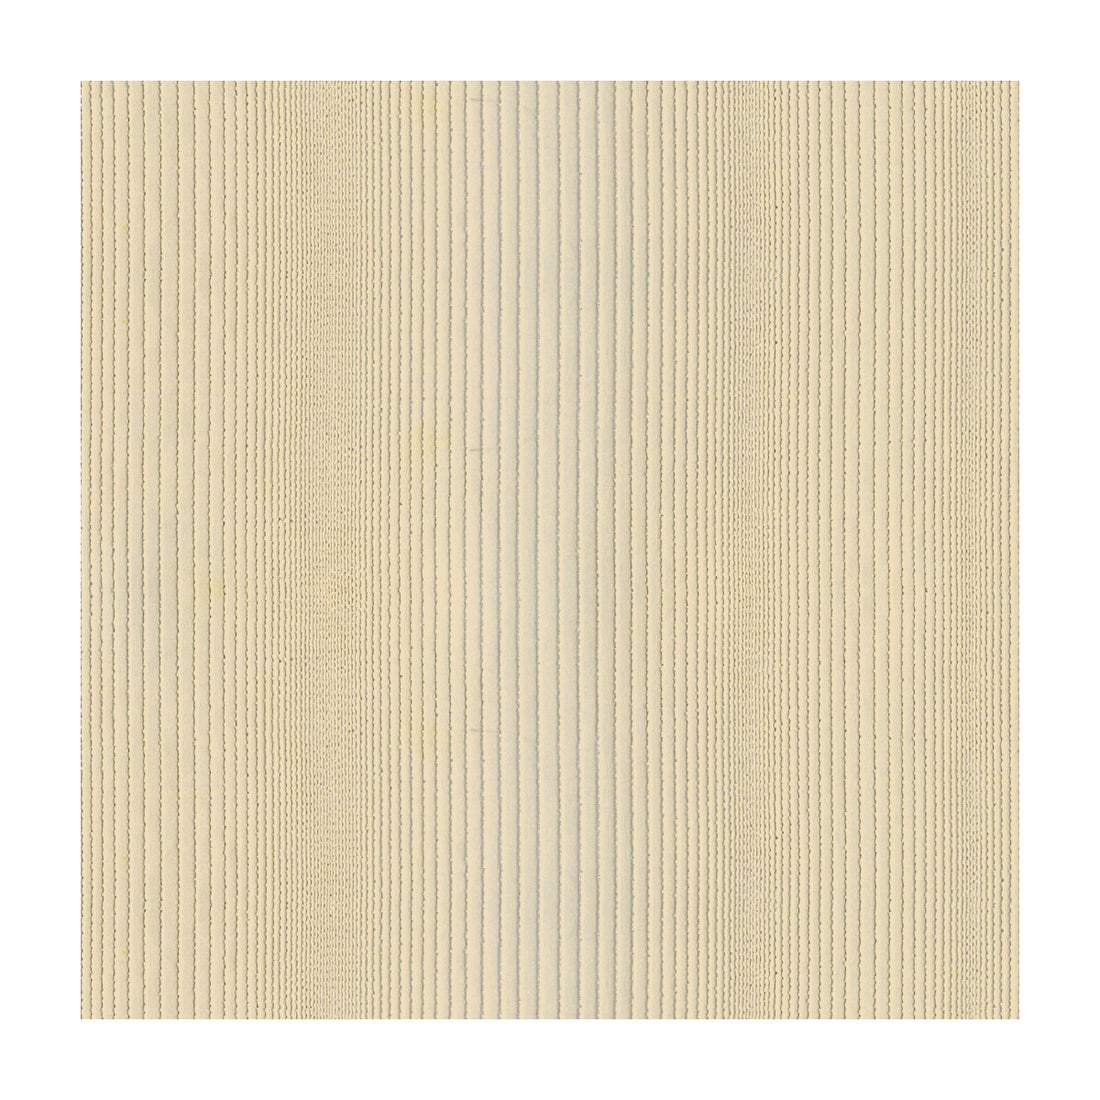 Kravet Basics fabric in 4120-16 color - pattern 4120.16.0 - by Kravet Basics